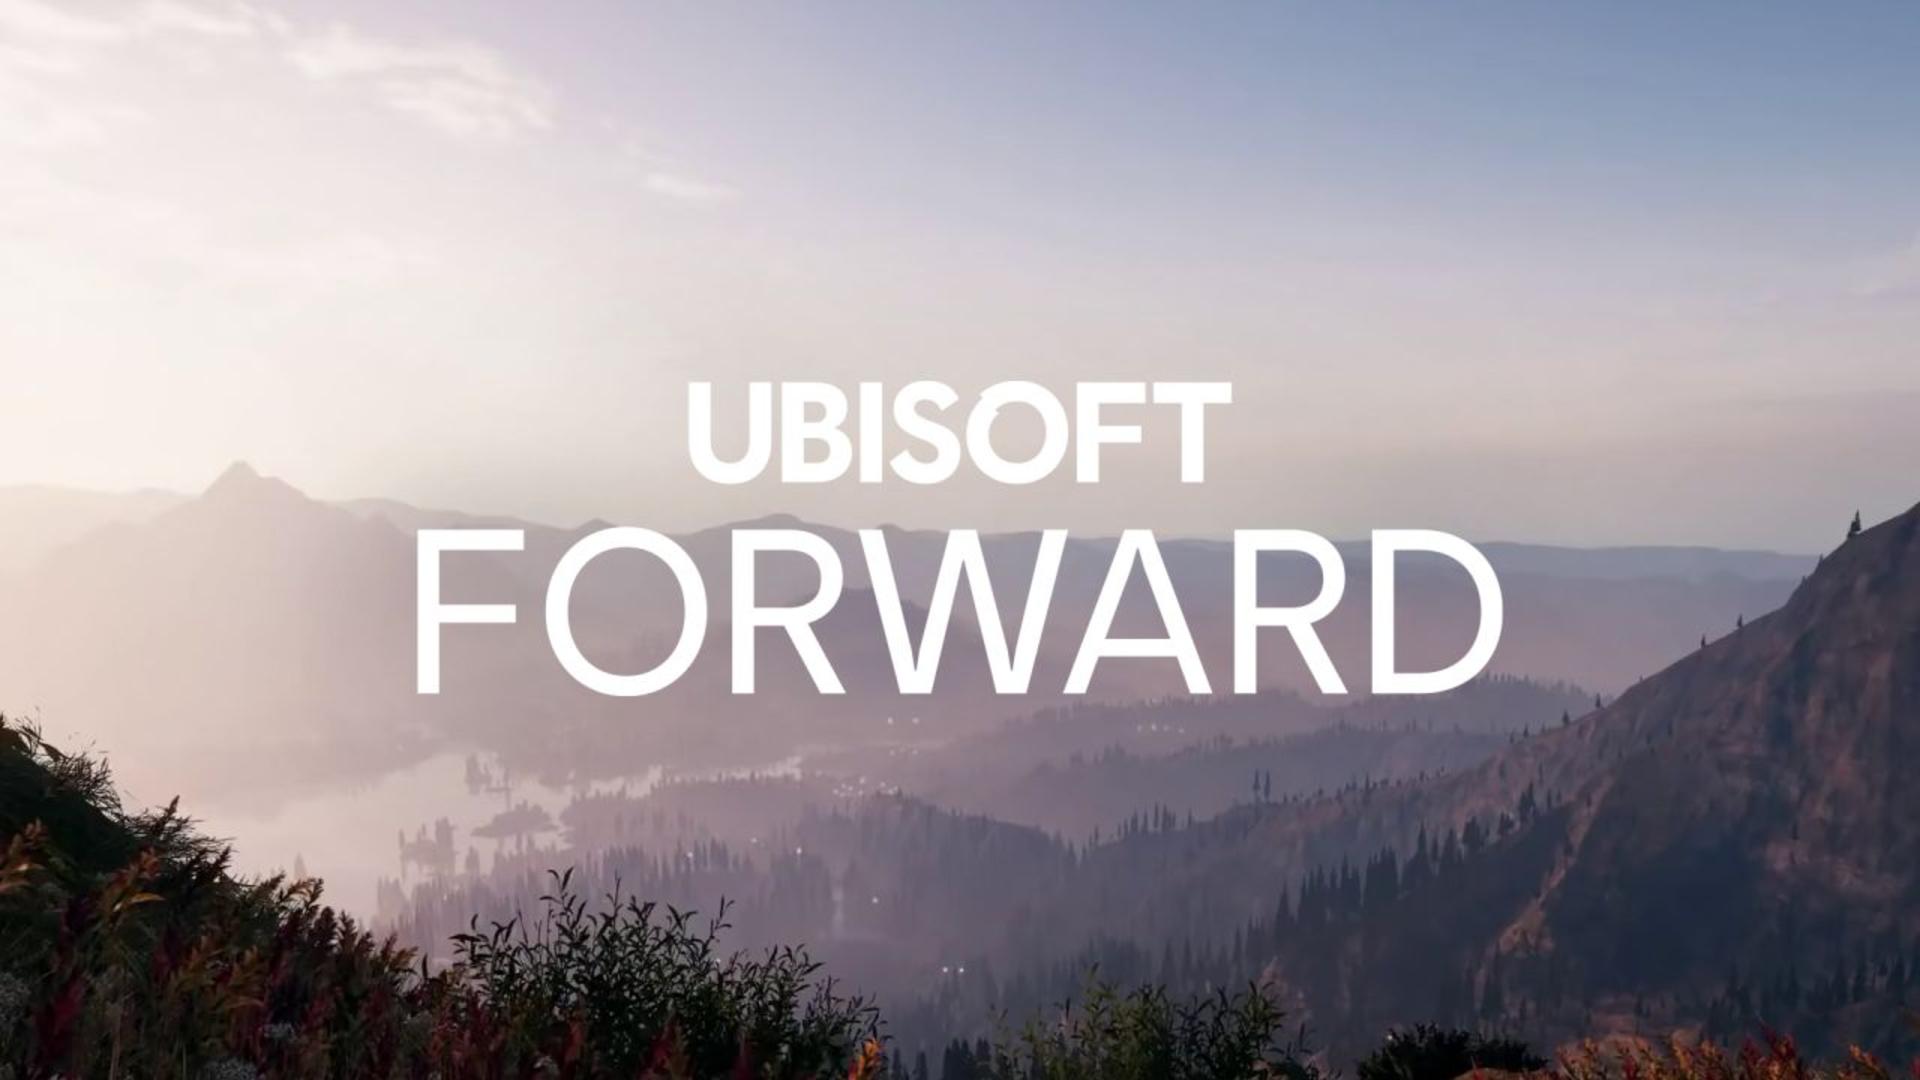 Ubisoft forward será o evento online em julho | f19f21a1 ubisoft forward | poquer | ubisoft forward poquer